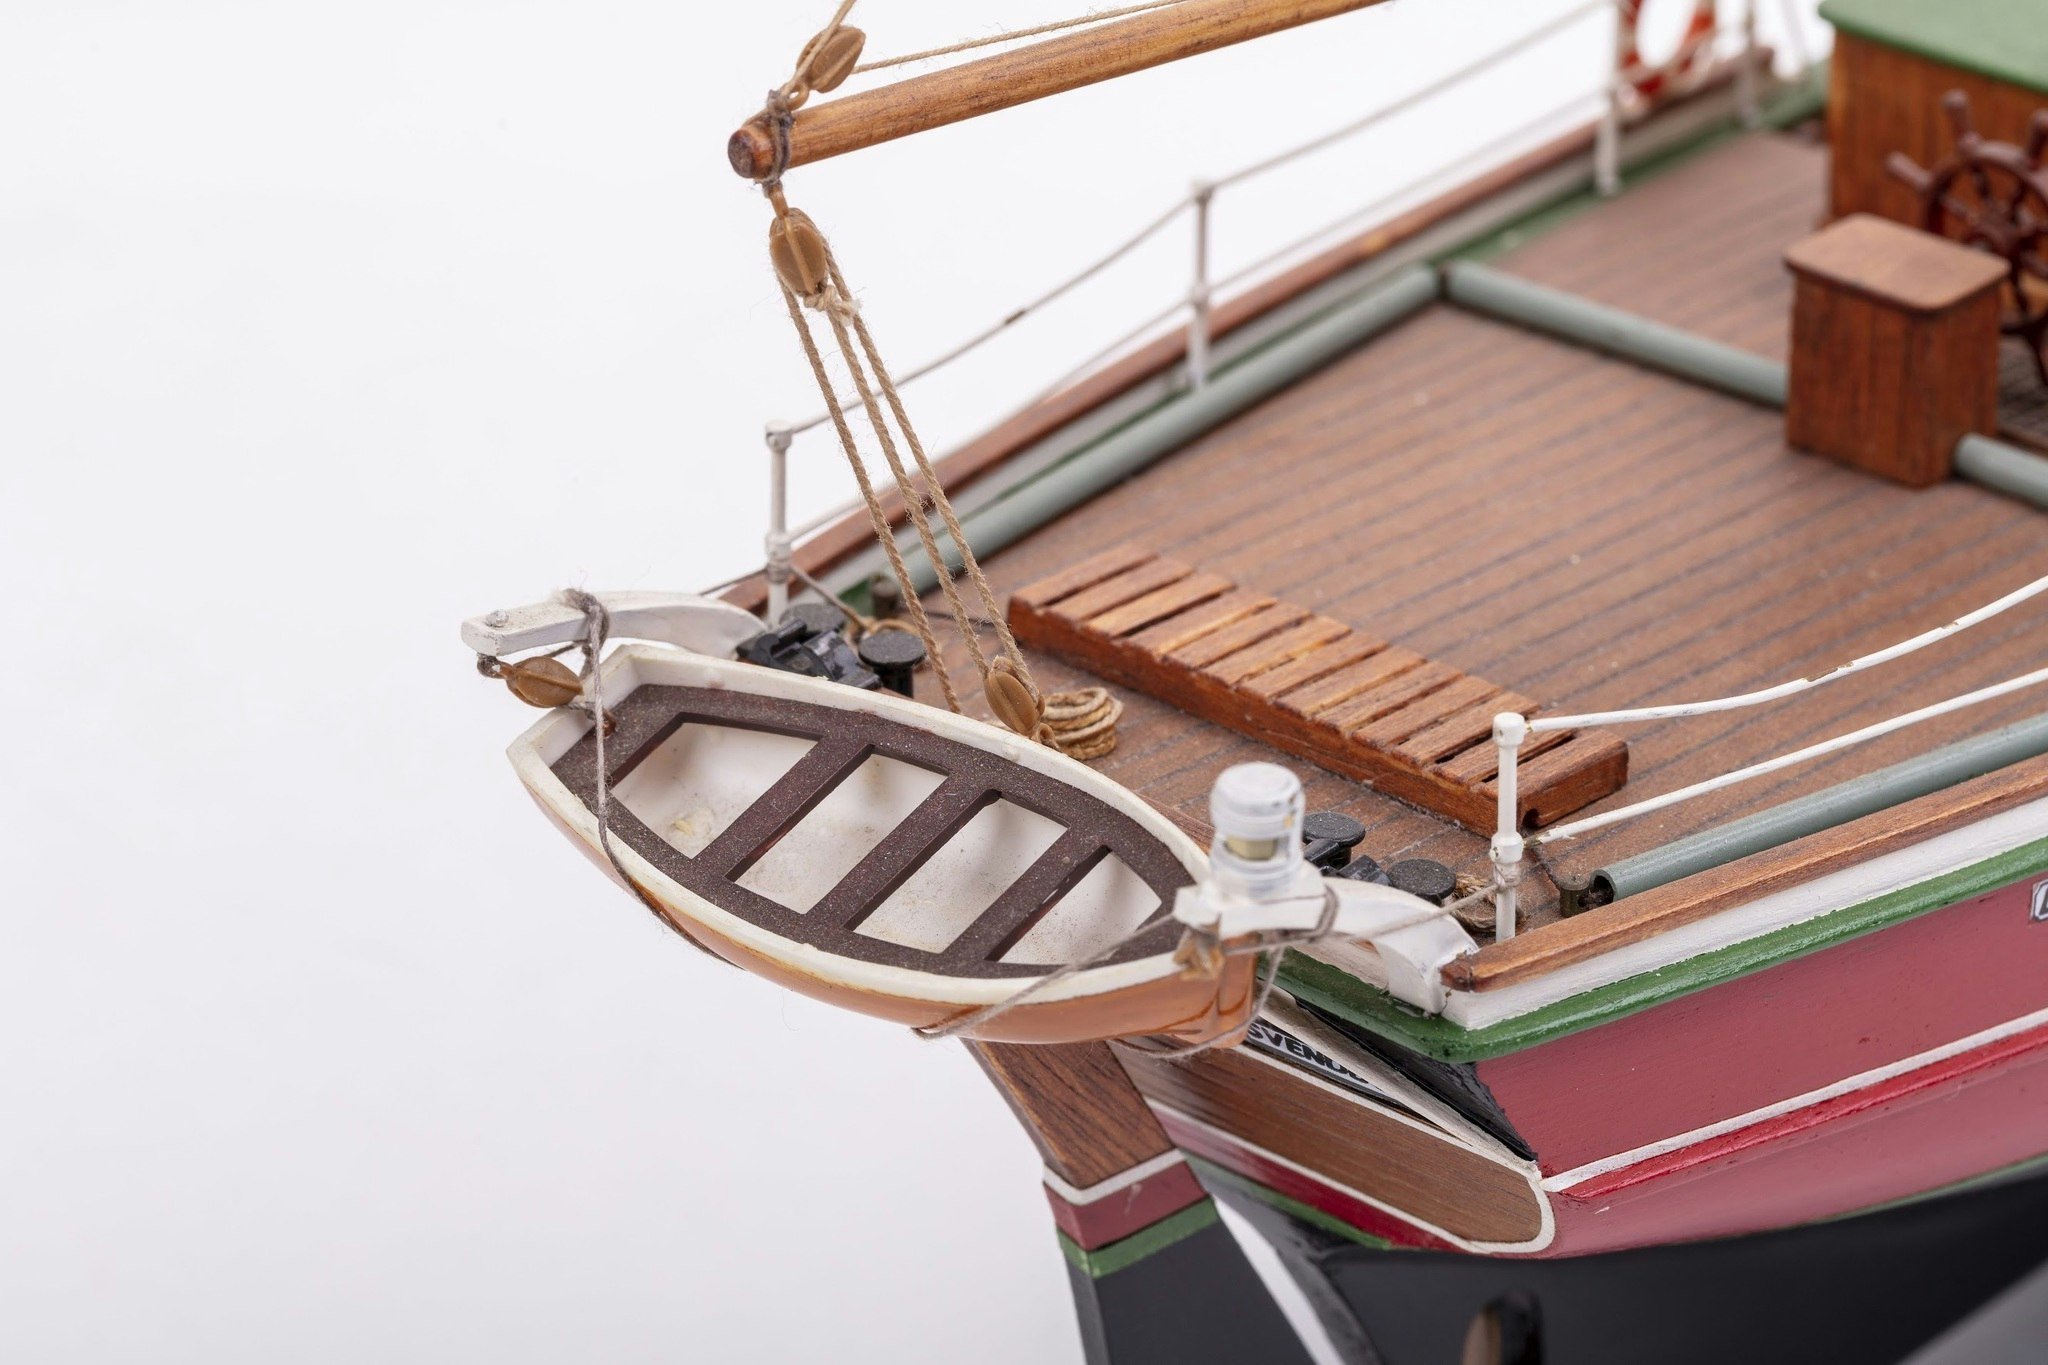 Skala 1/50 Byggmodell av BB578 Lilla Dan med Träskrov - från Billing Boats